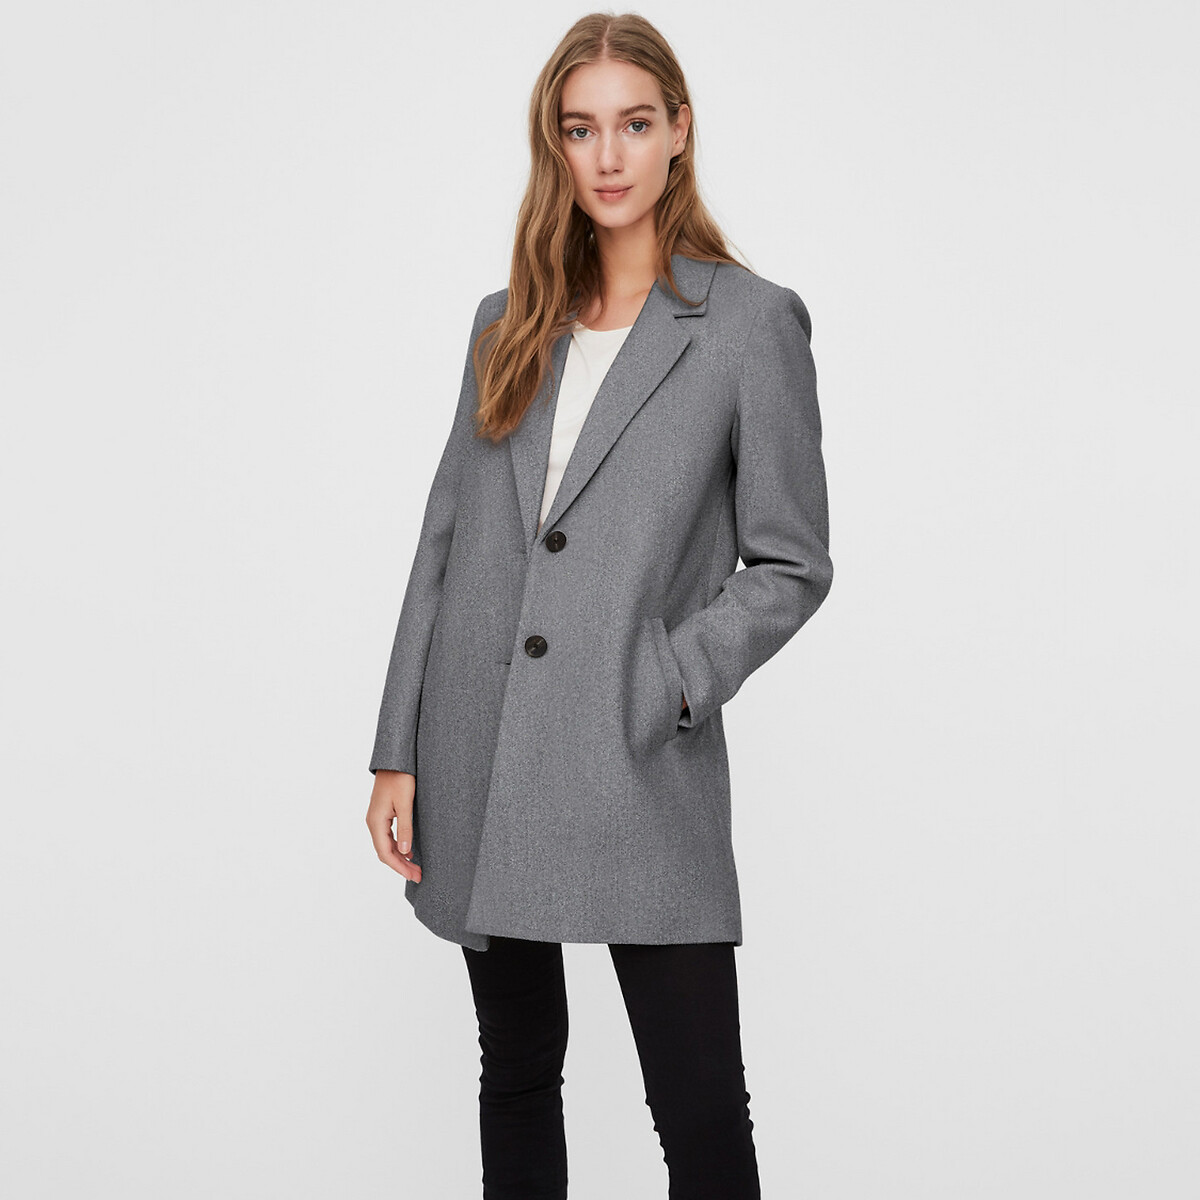 Пальто La Redoute Средней длины на пуговицах S серый, размер S